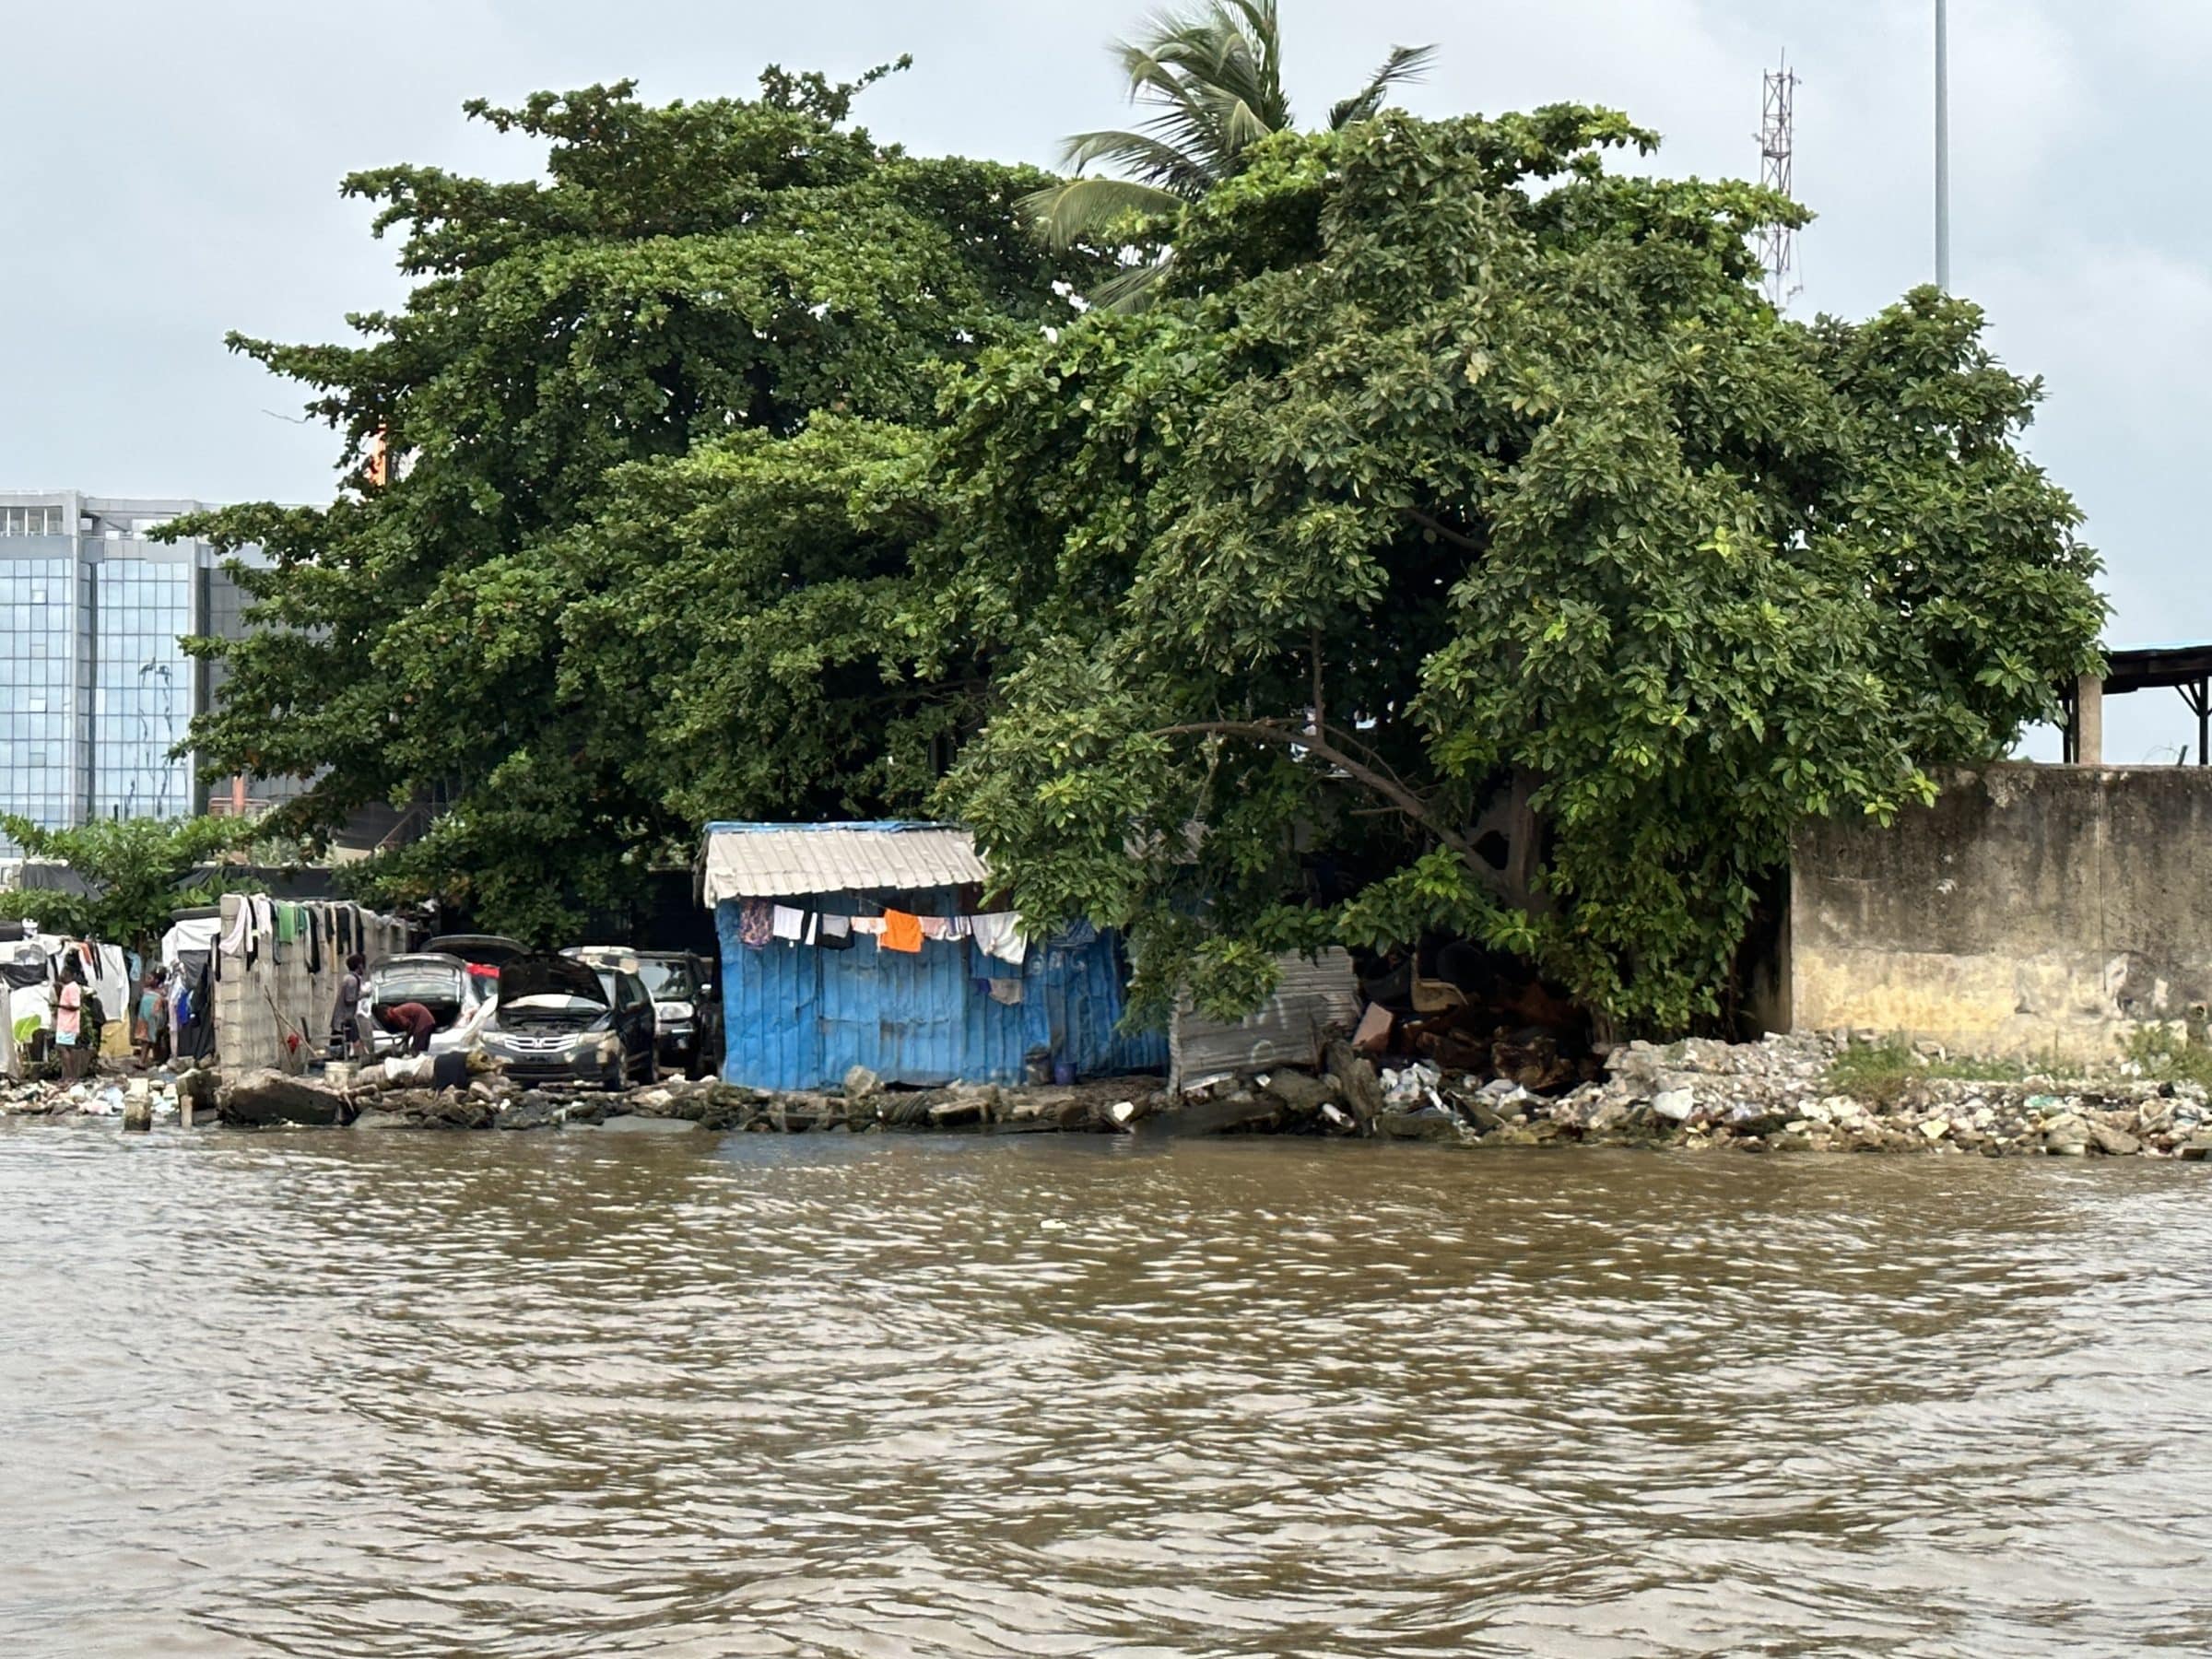 Hébergement au bord de l'eau | Overlanding au Nigeria